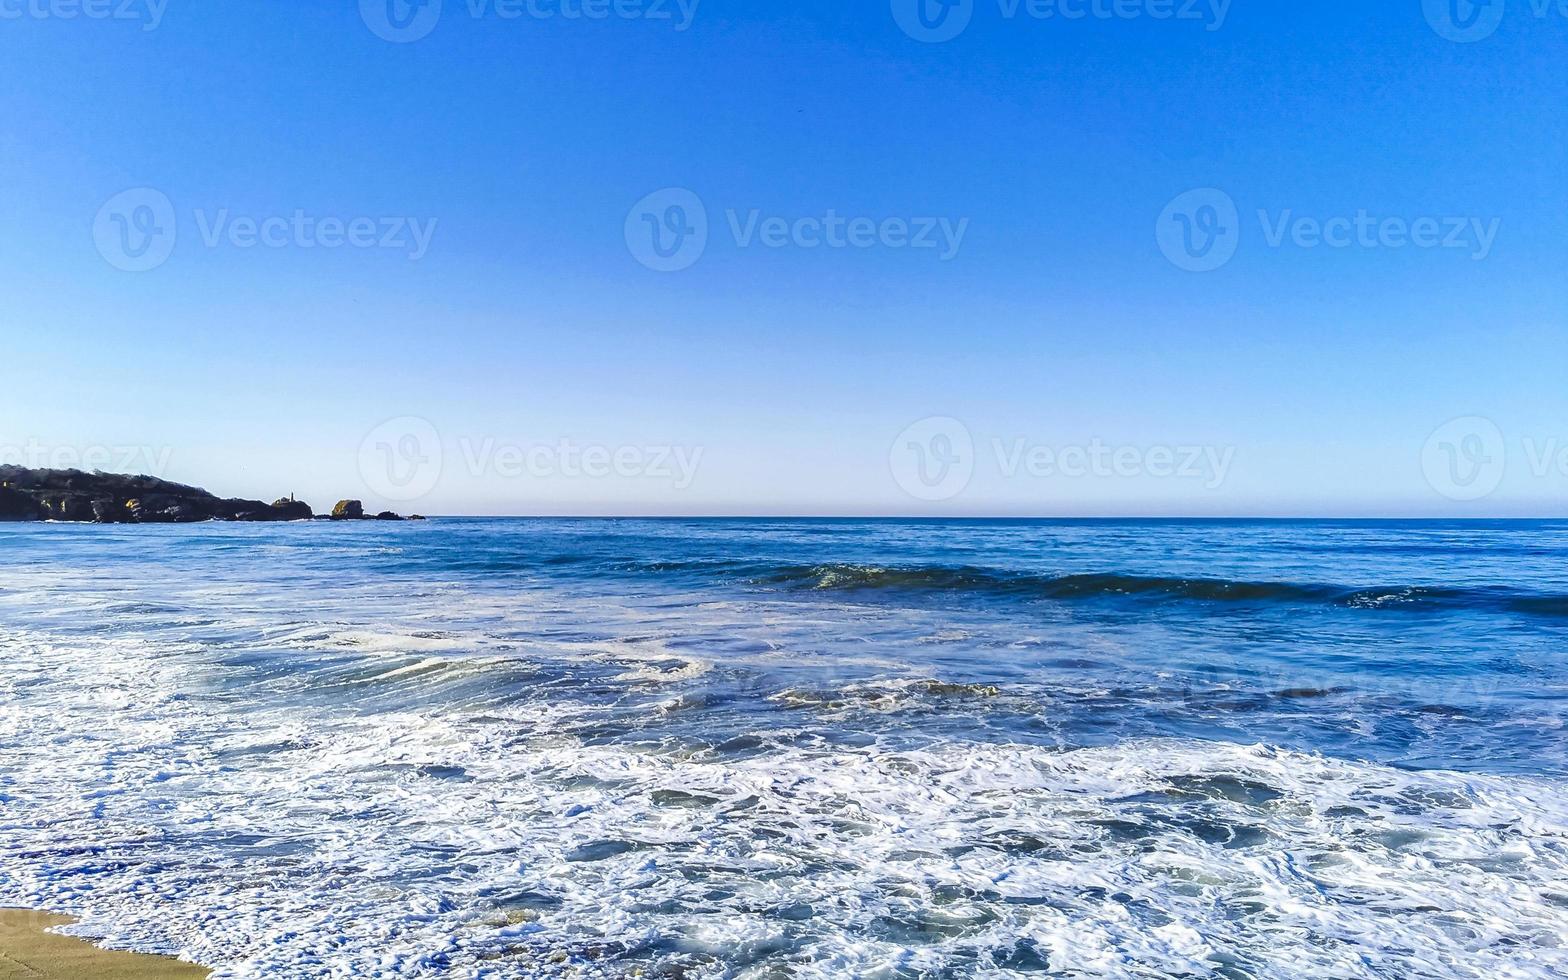 Extremadamente enormes grandes olas surfista playa la punta zicatela méxico. foto